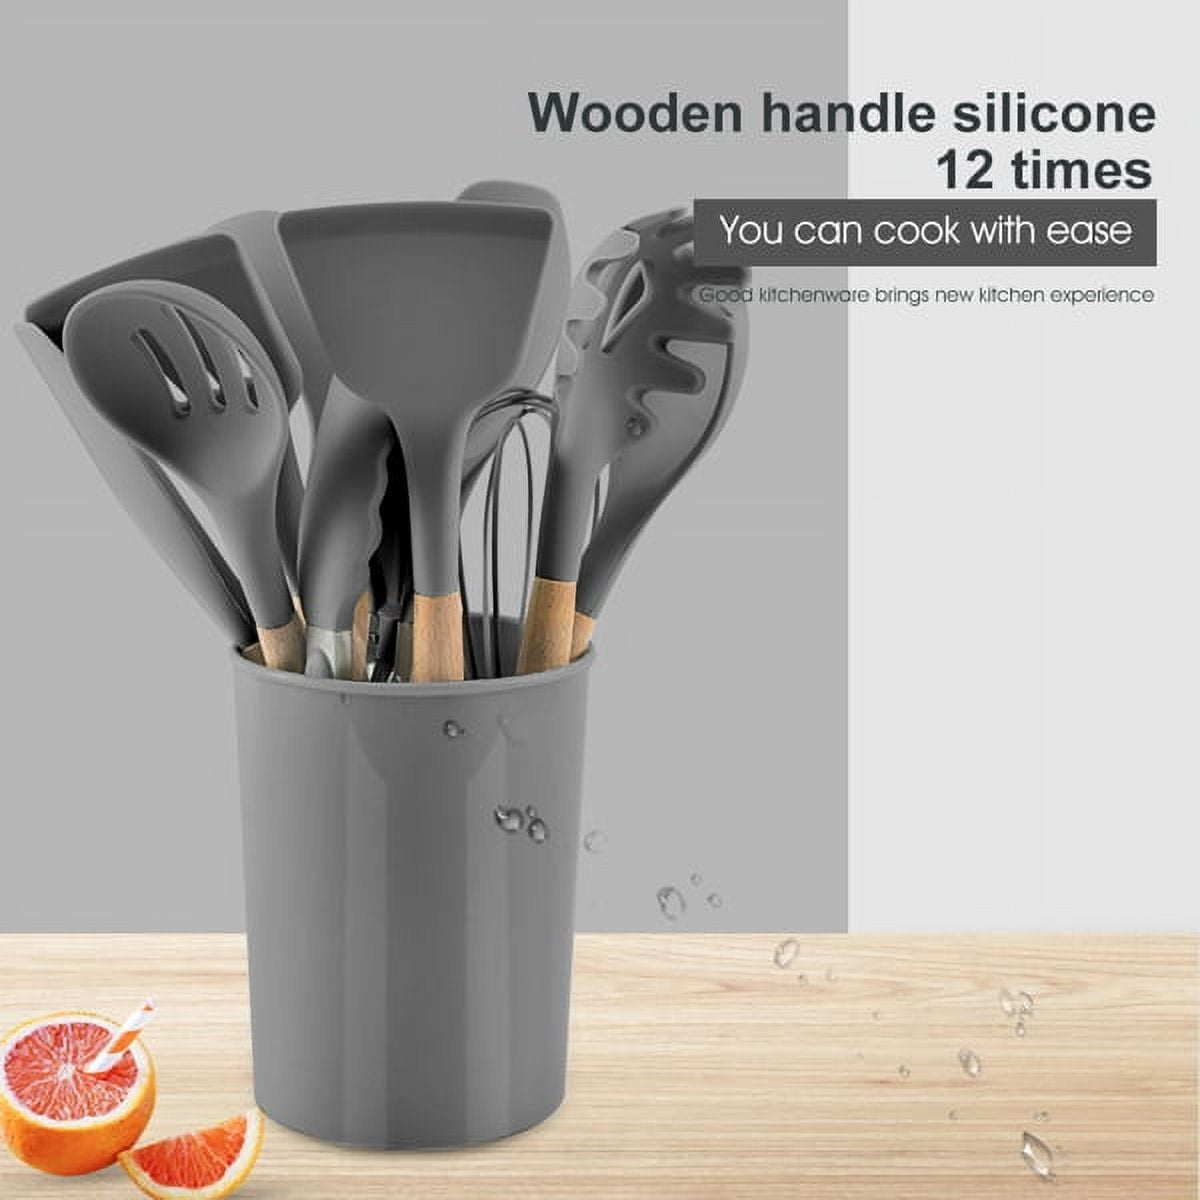 Chefchosen's Silicone Kitchen Utensils W/ Wooden Handle